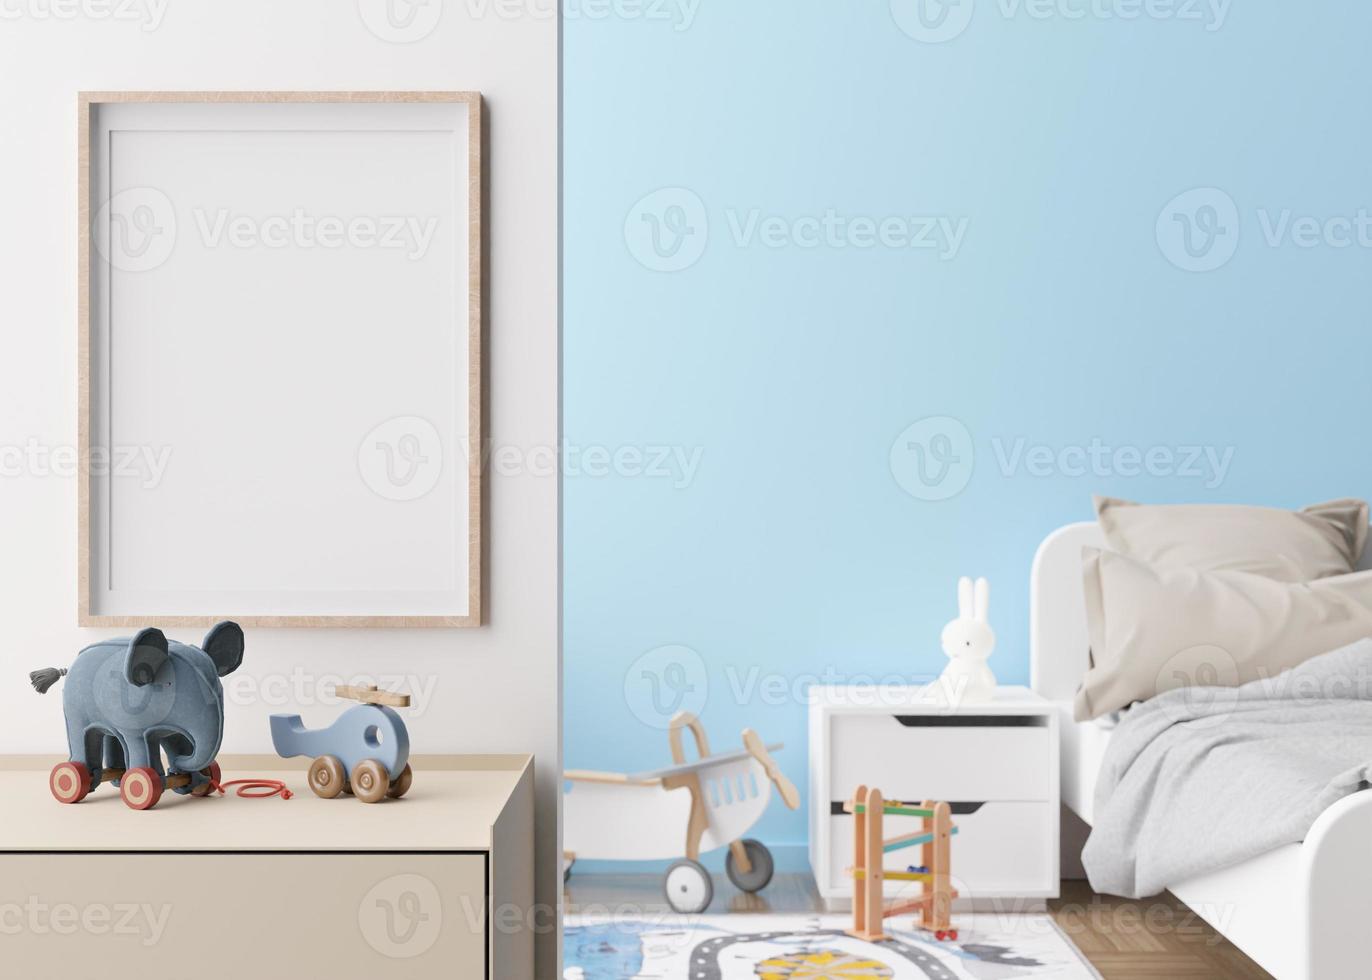 Moldura para retrato vertical vazia na parede branca no quarto moderno da criança. mock up interior em estilo escandinavo contemporâneo. livre, copie o espaço para a imagem. cama, brinquedos. quarto aconchegante para crianças. renderização 3D. foto